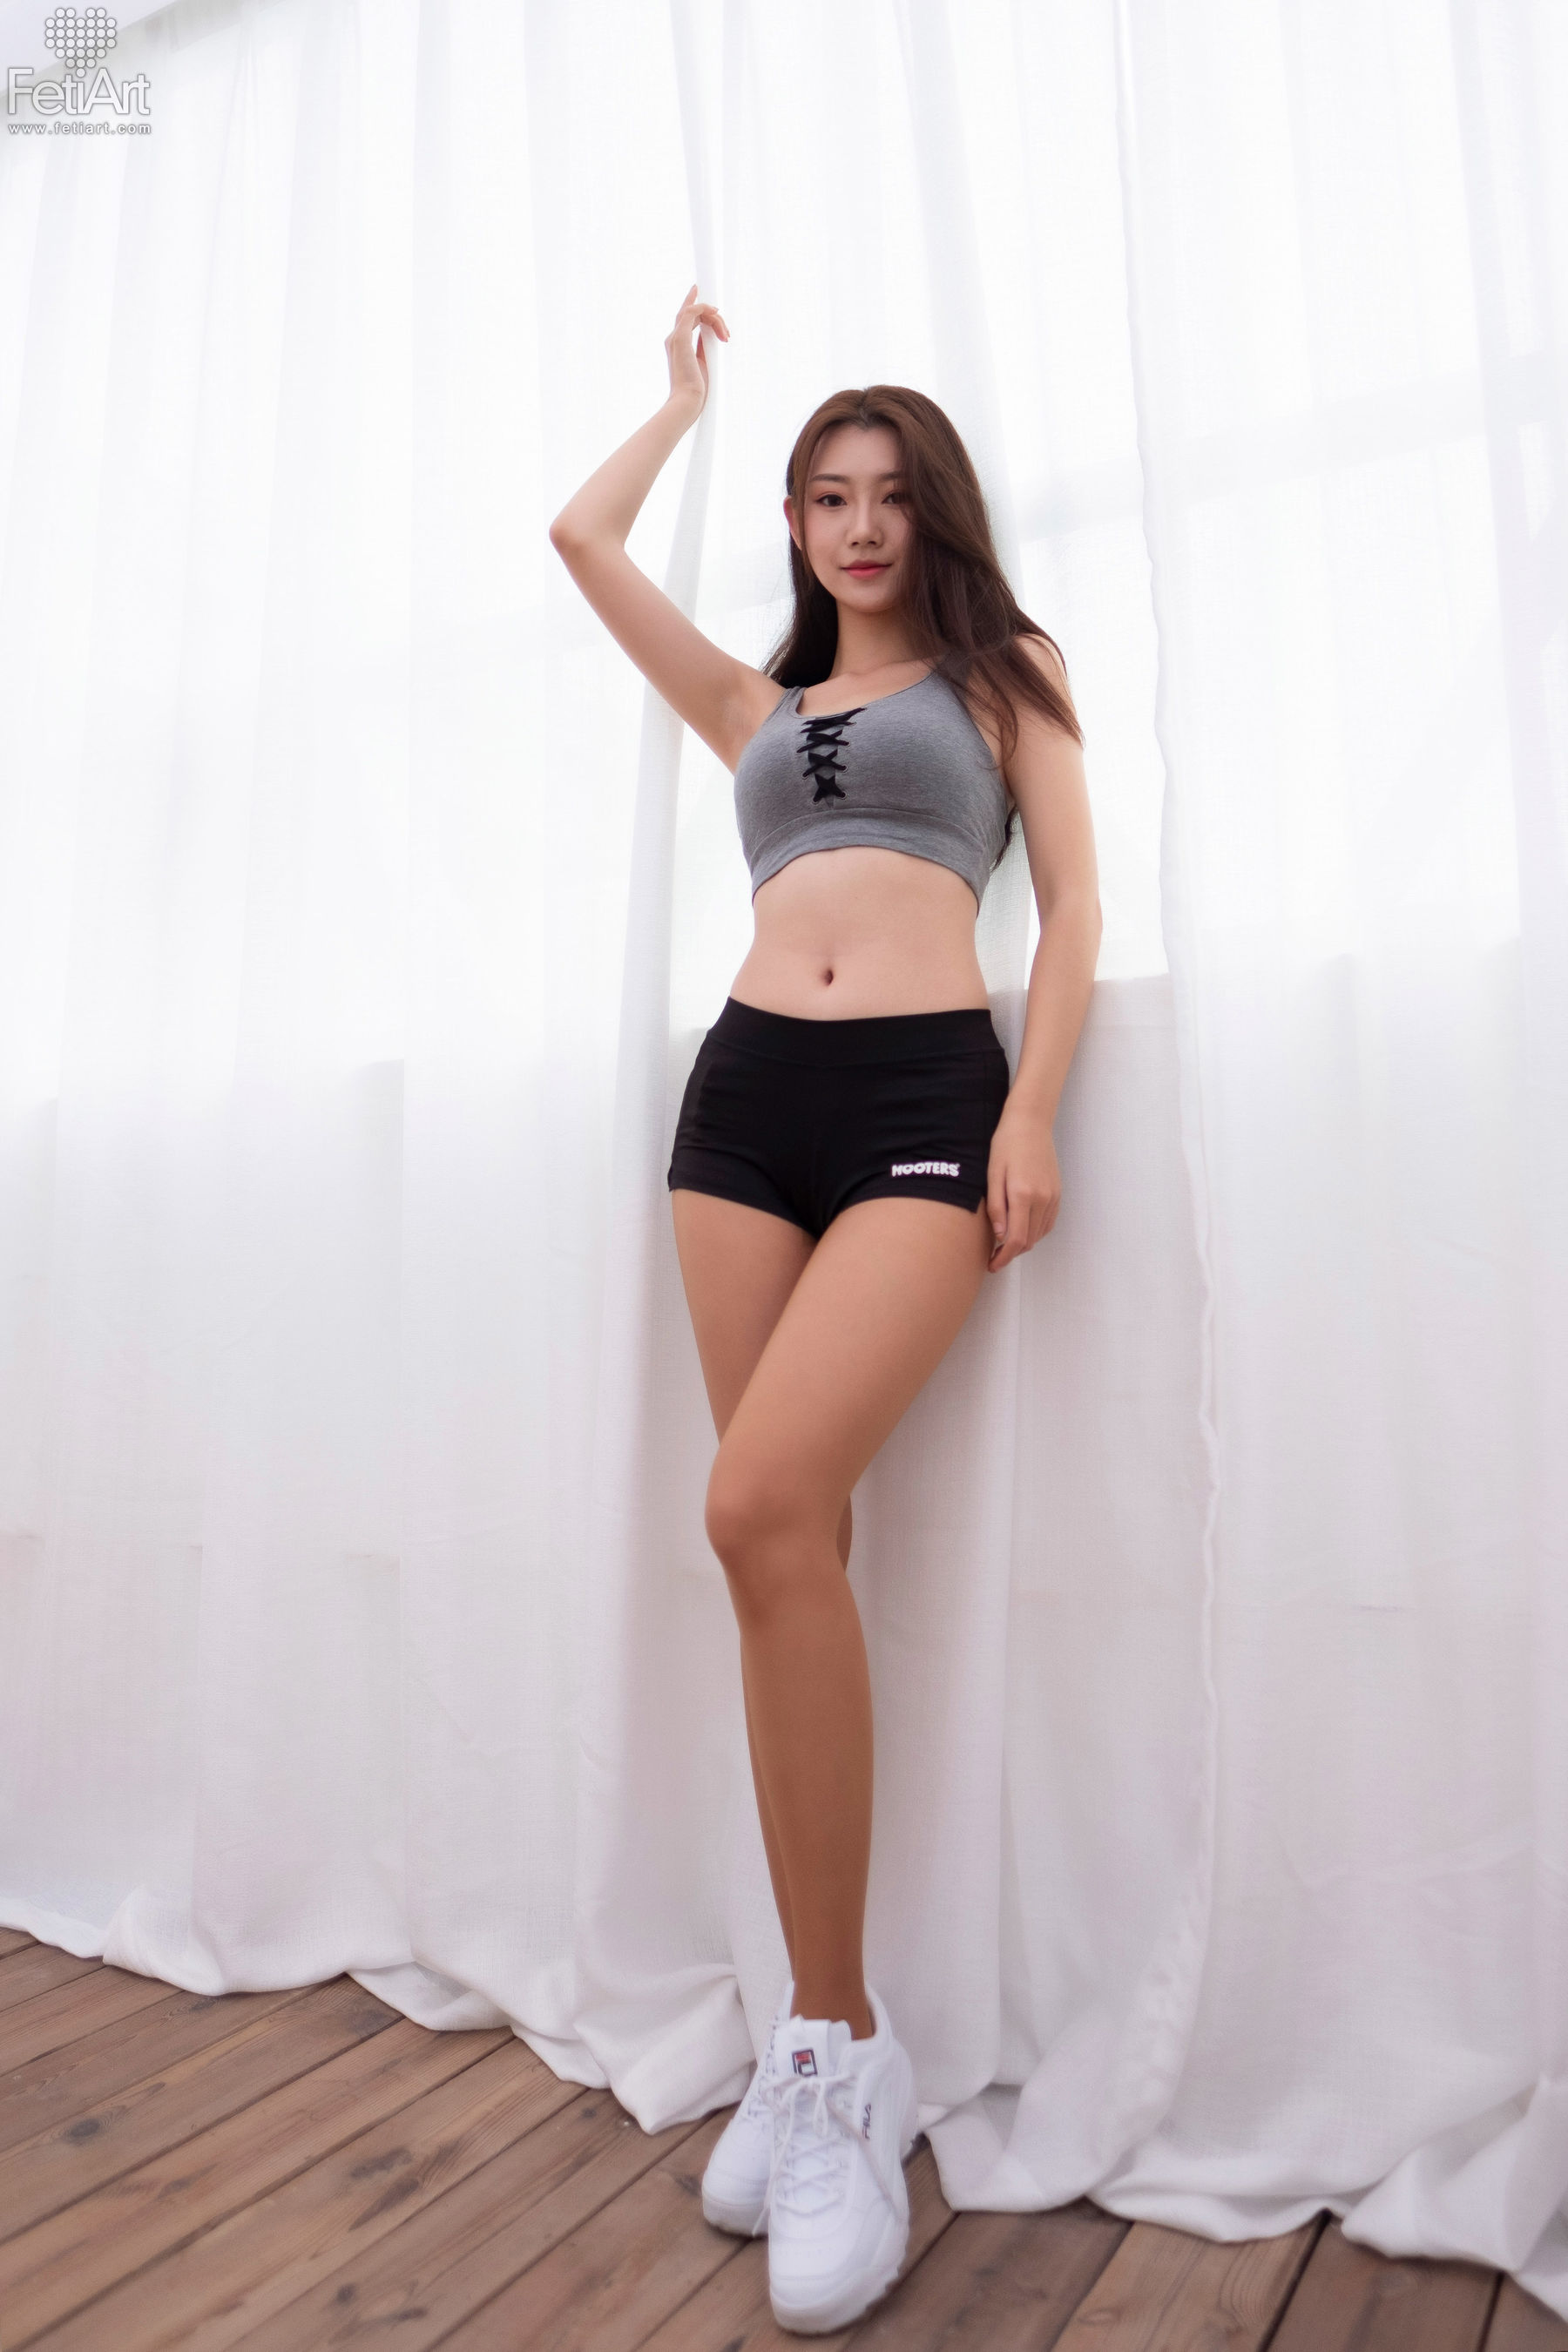 [尚物集FetiArt] No.049 Dream Gym Girl MODEL-Jessica